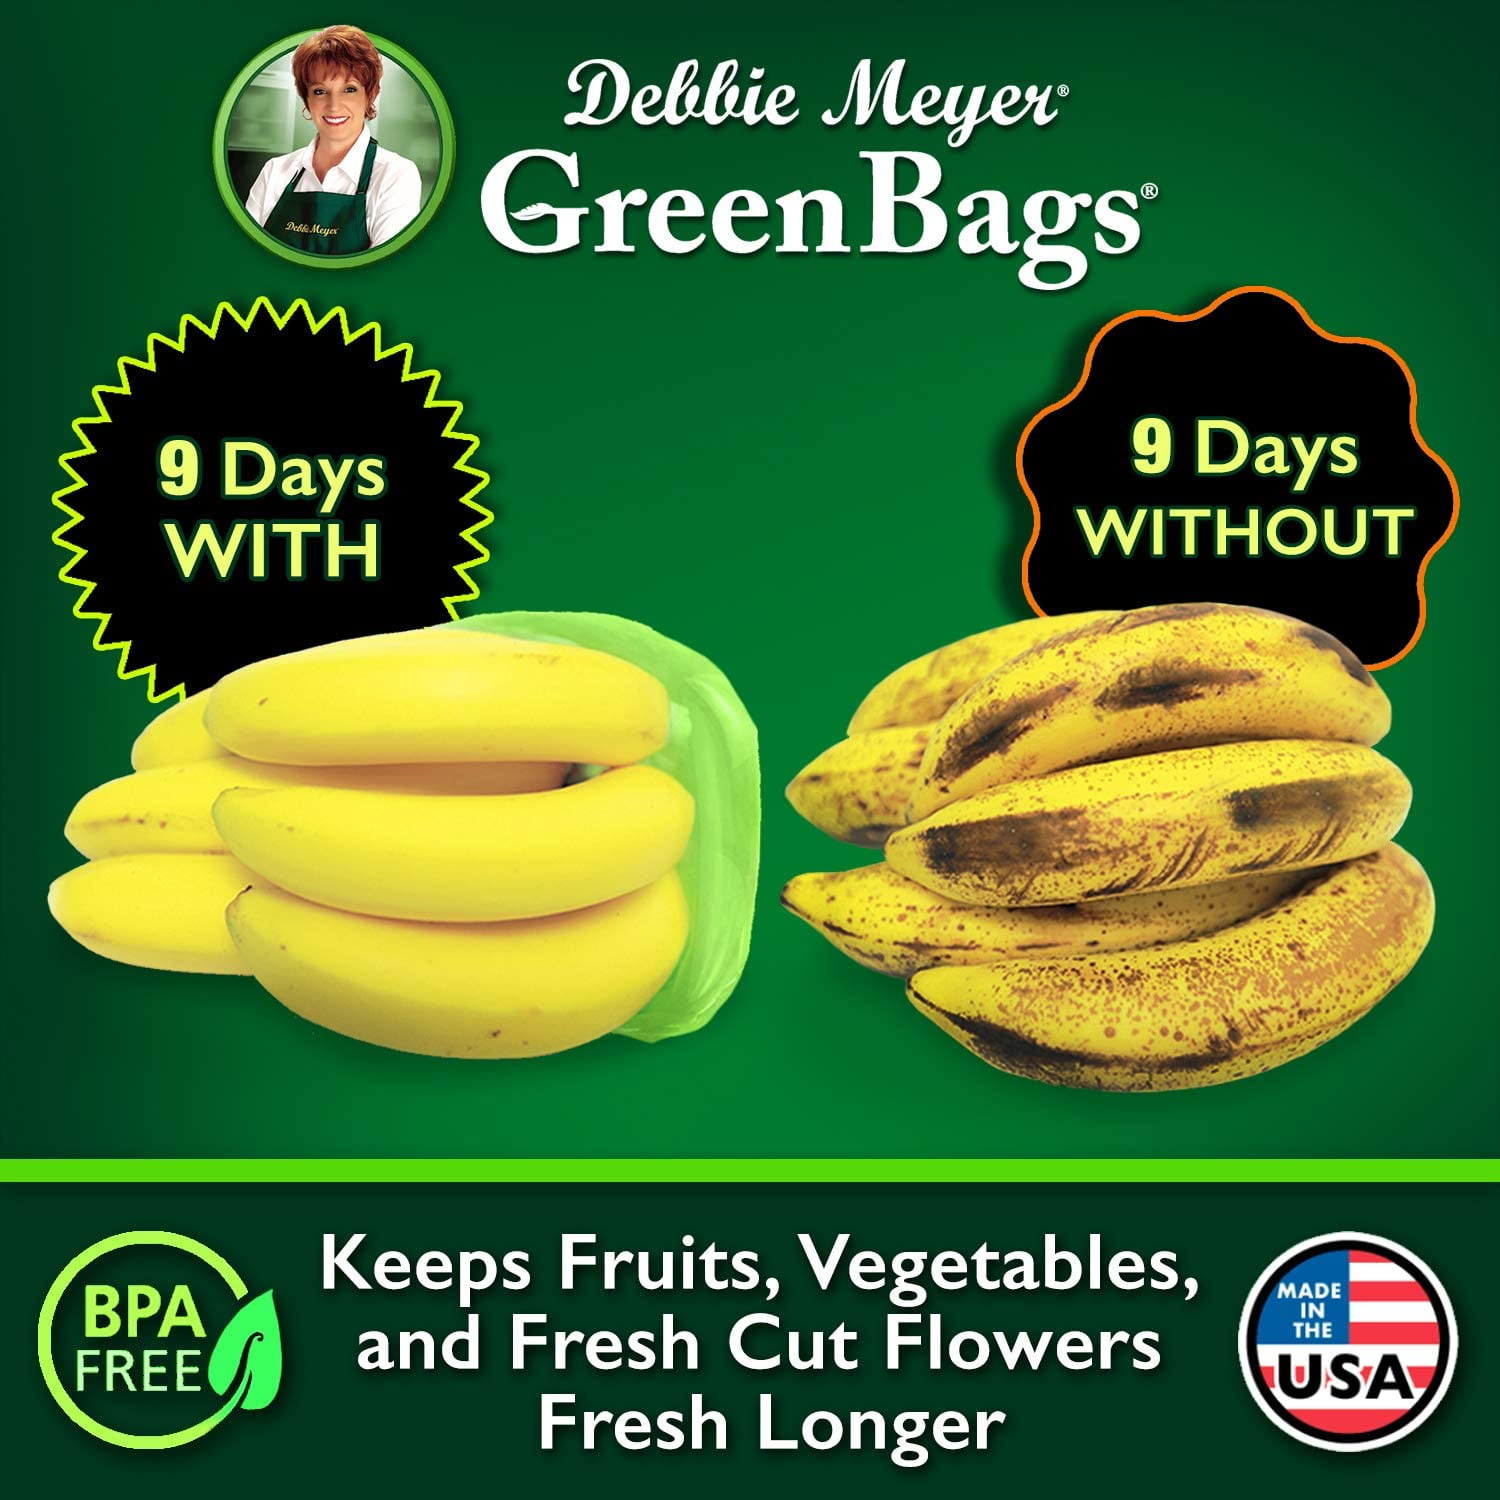 Debbie Meyer Green Bags Variety Pack Green Bags 20 Ea